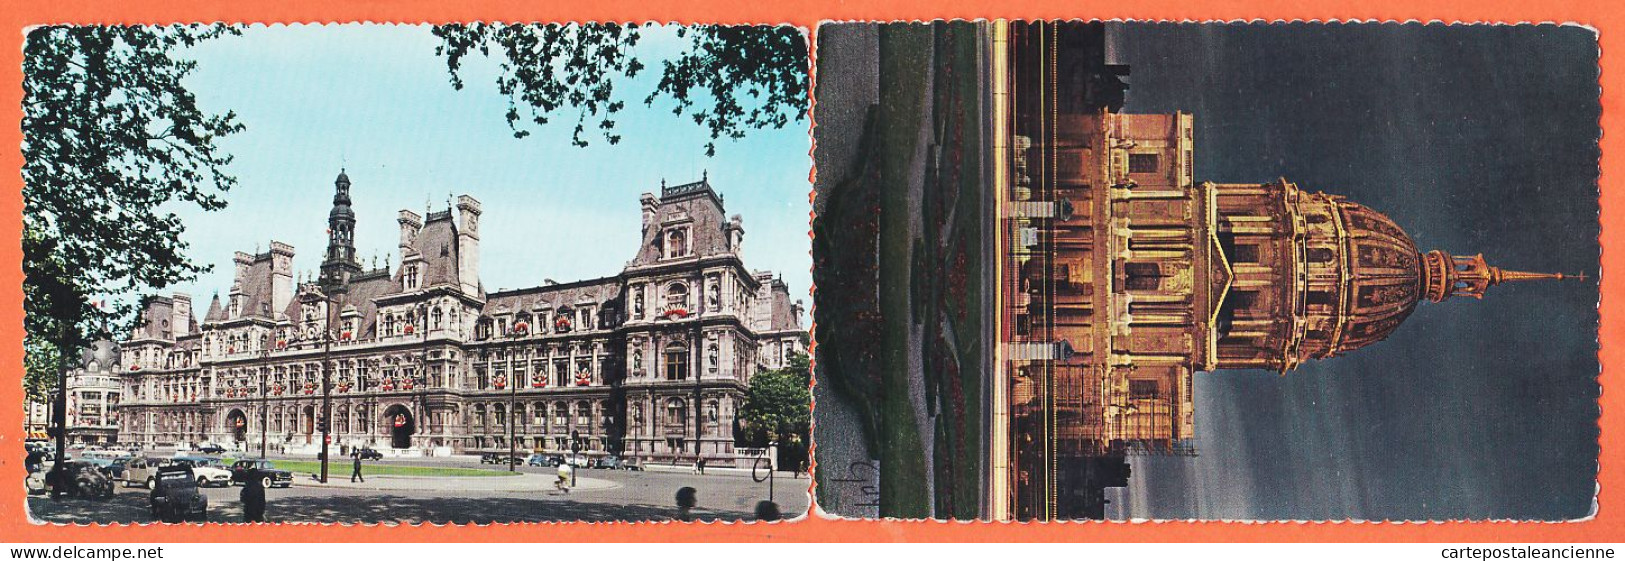 35521 / PARIS Et Ses MERVEILLES  2 CPSM  Dôme INVALIDES Et HOTEL VILLE 1960s Photo TRIMBOLI André LECONTE GUY 1042-1057 - Other Monuments